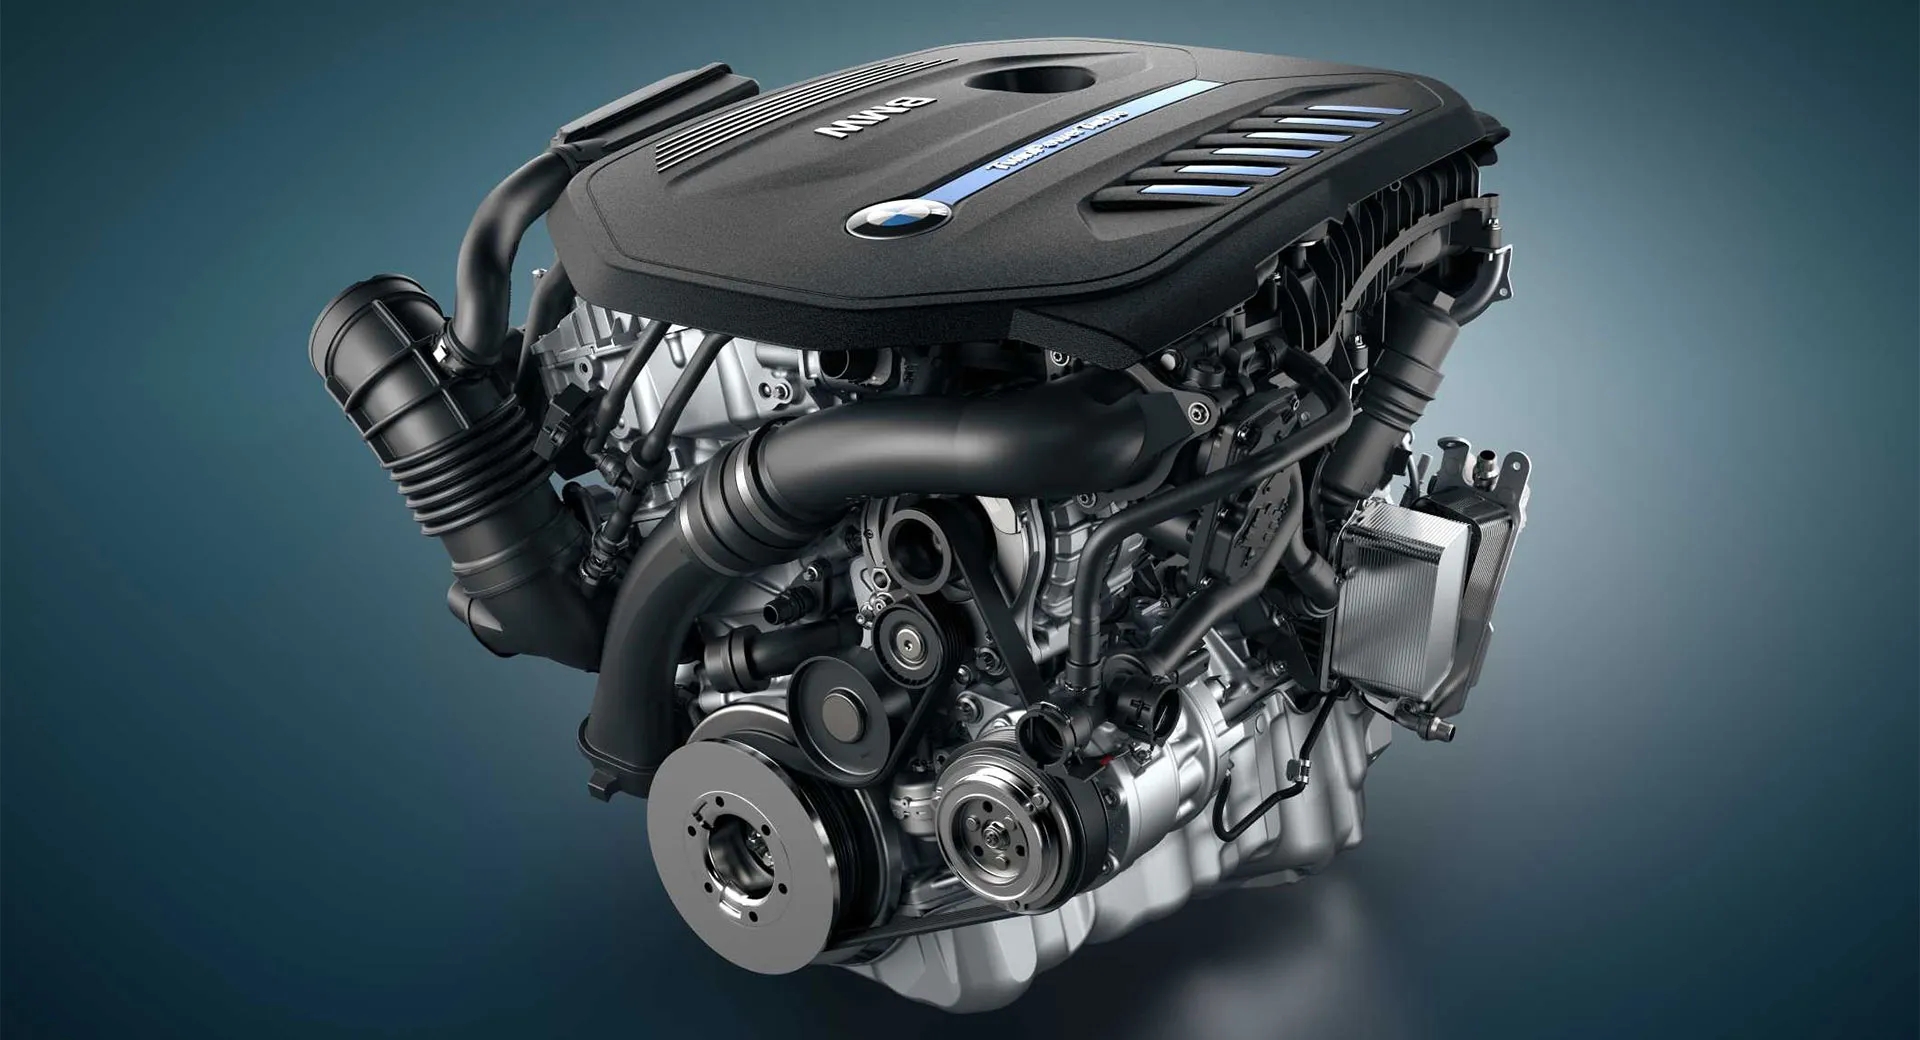 输出功率达400马力 BMW推出新款3.0升发动机